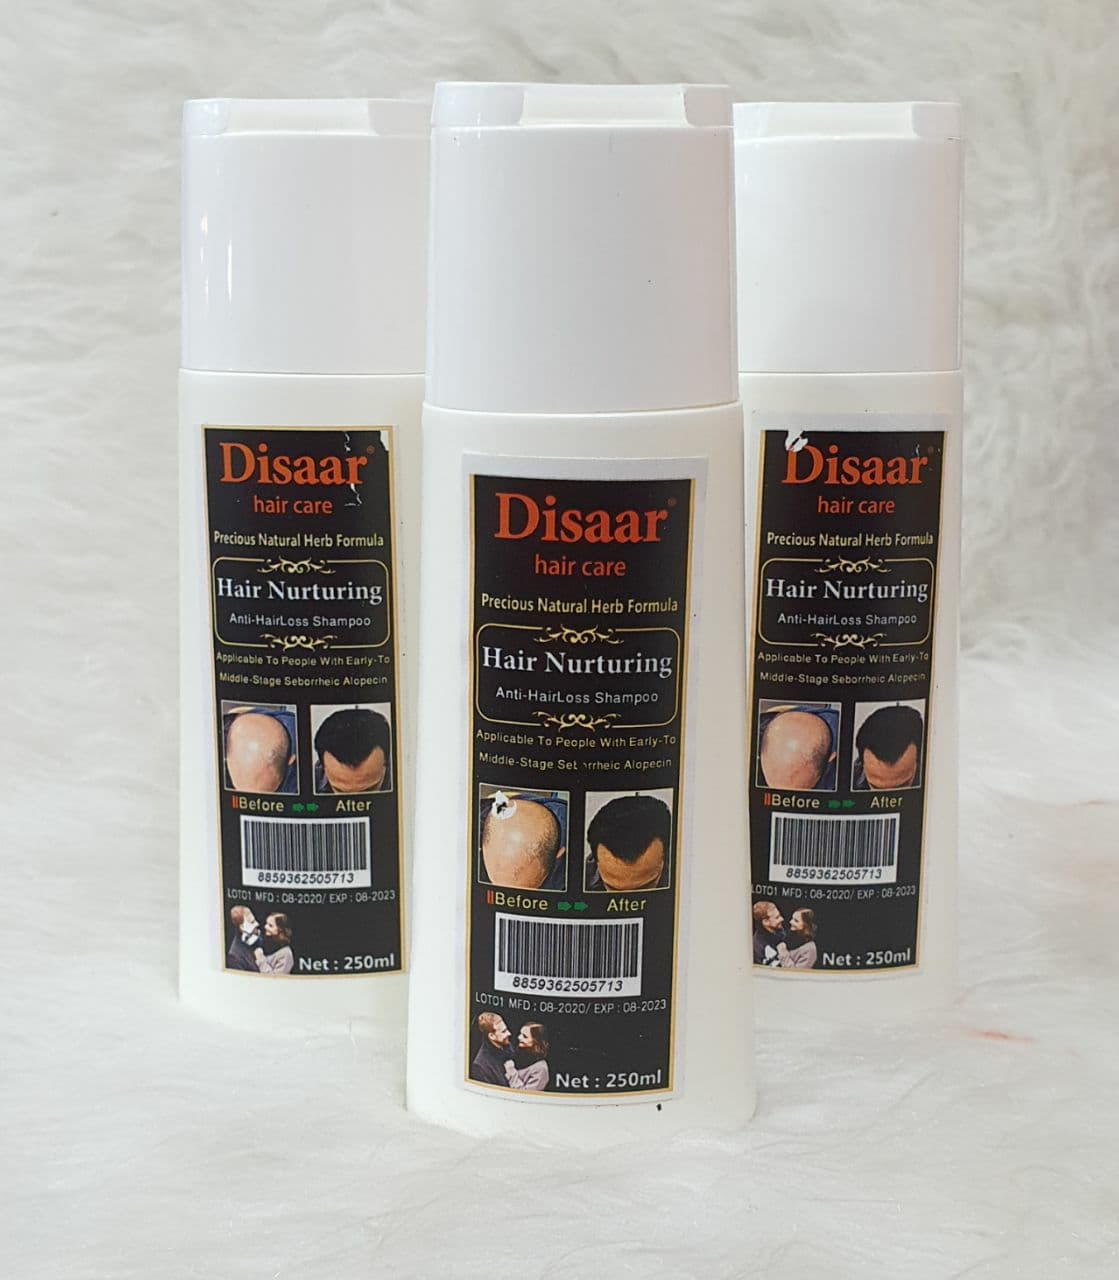 شامپو تریاک دیسار | disar  hair natural antihair loss shampoo | شامپو تریاک